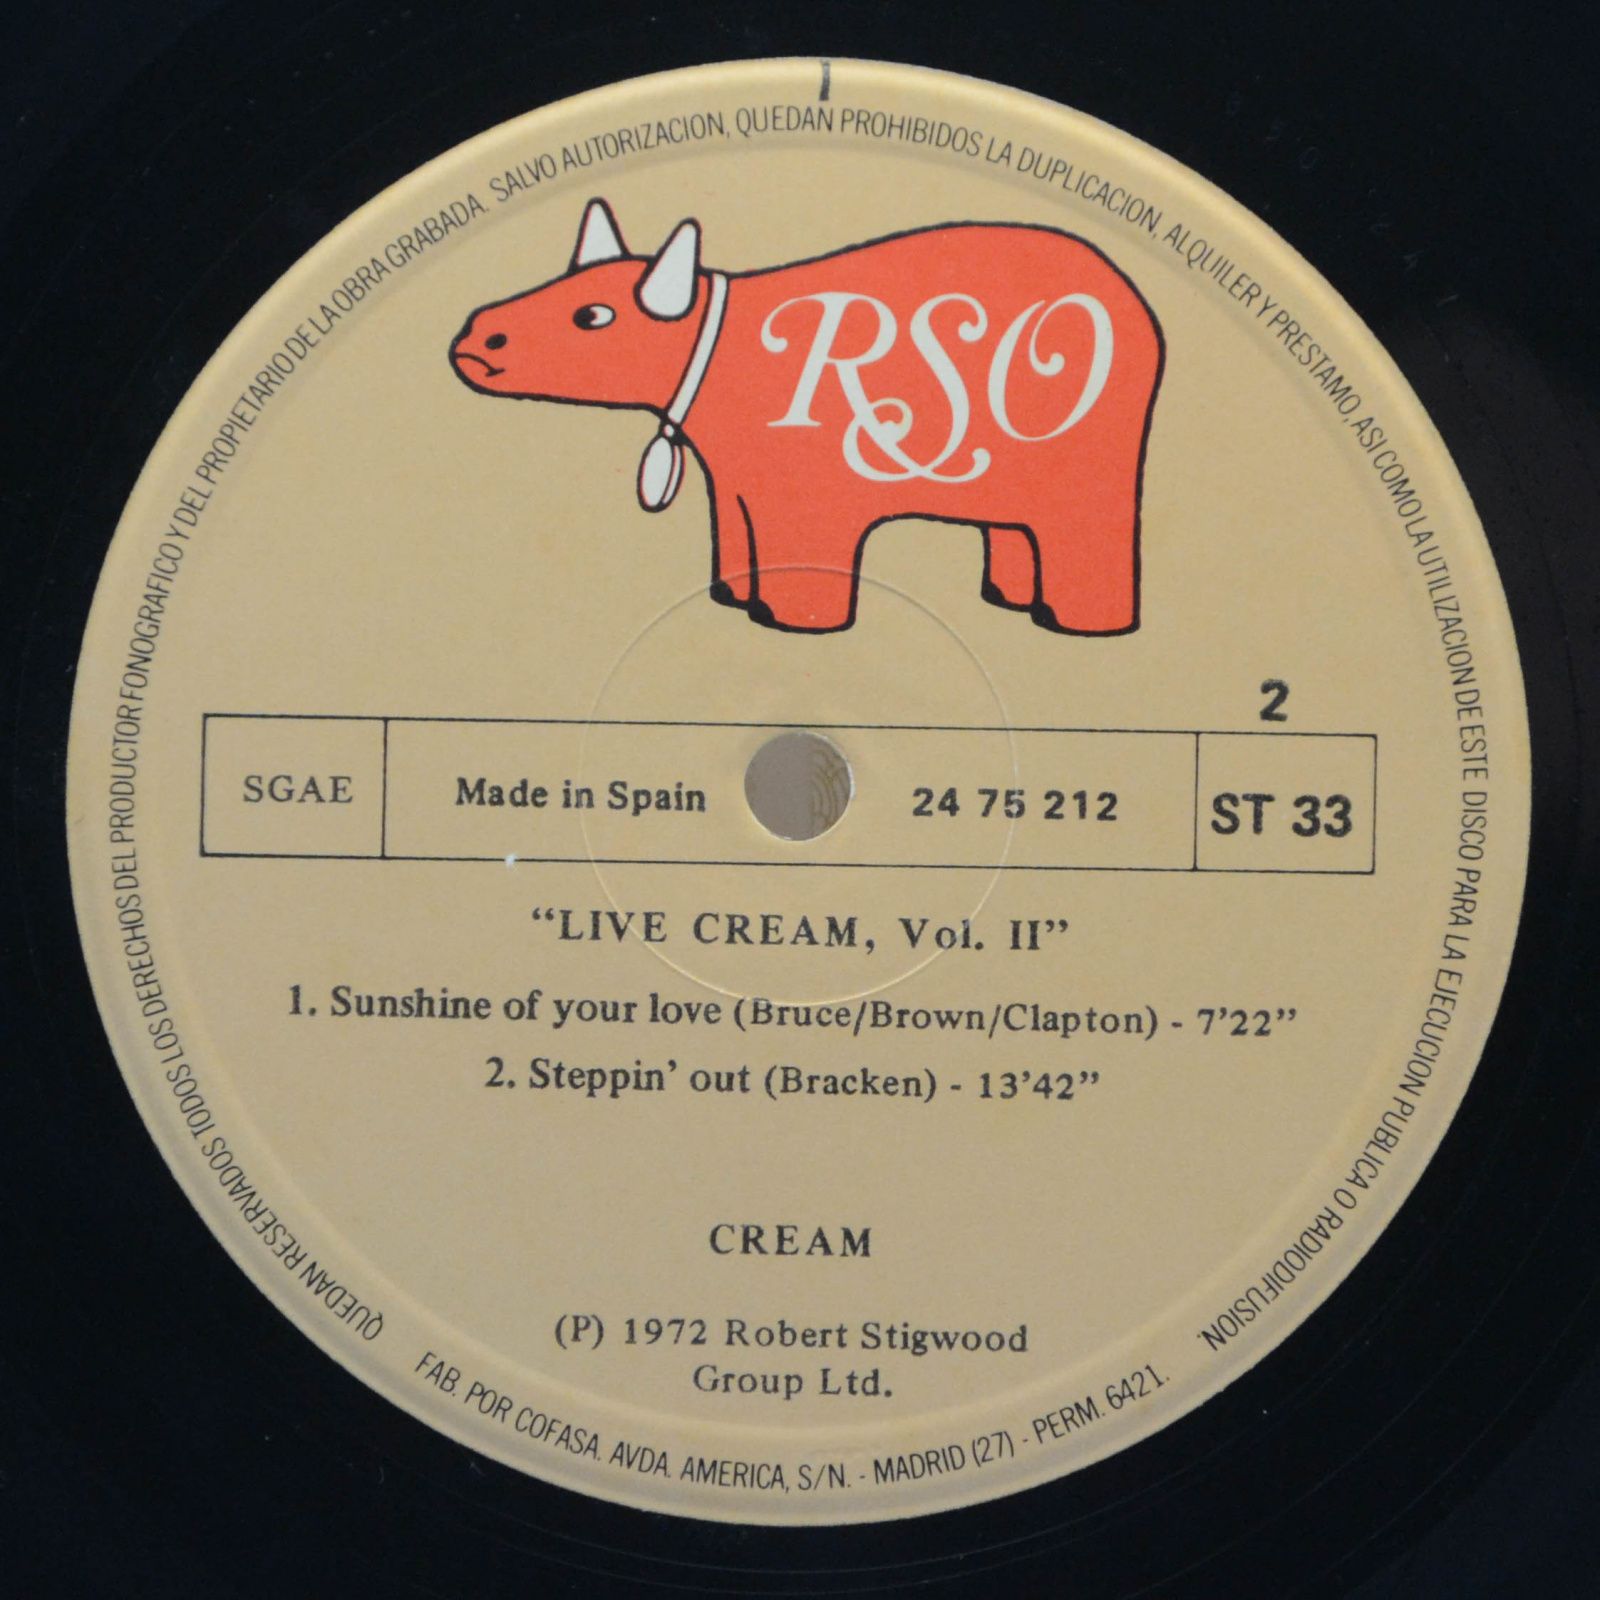 Cream — Live Cream Volume II, 1980